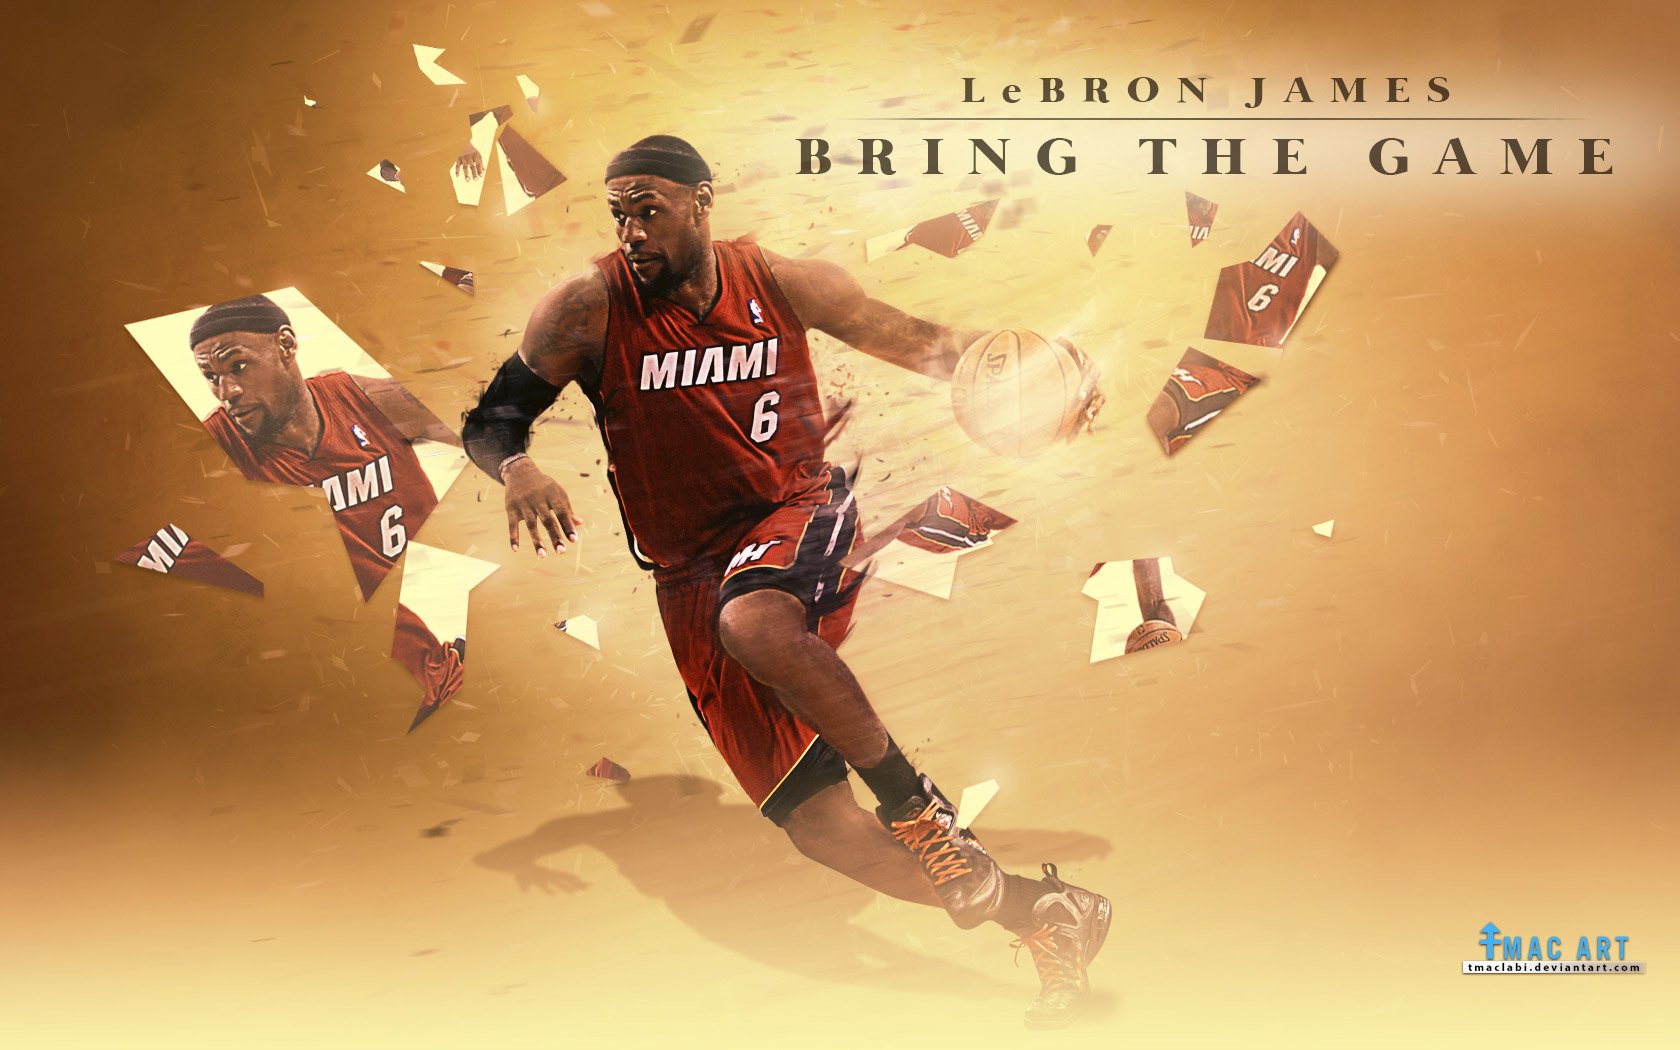 Miami Sports Teams V2  Team wallpaper, Sports graphic design